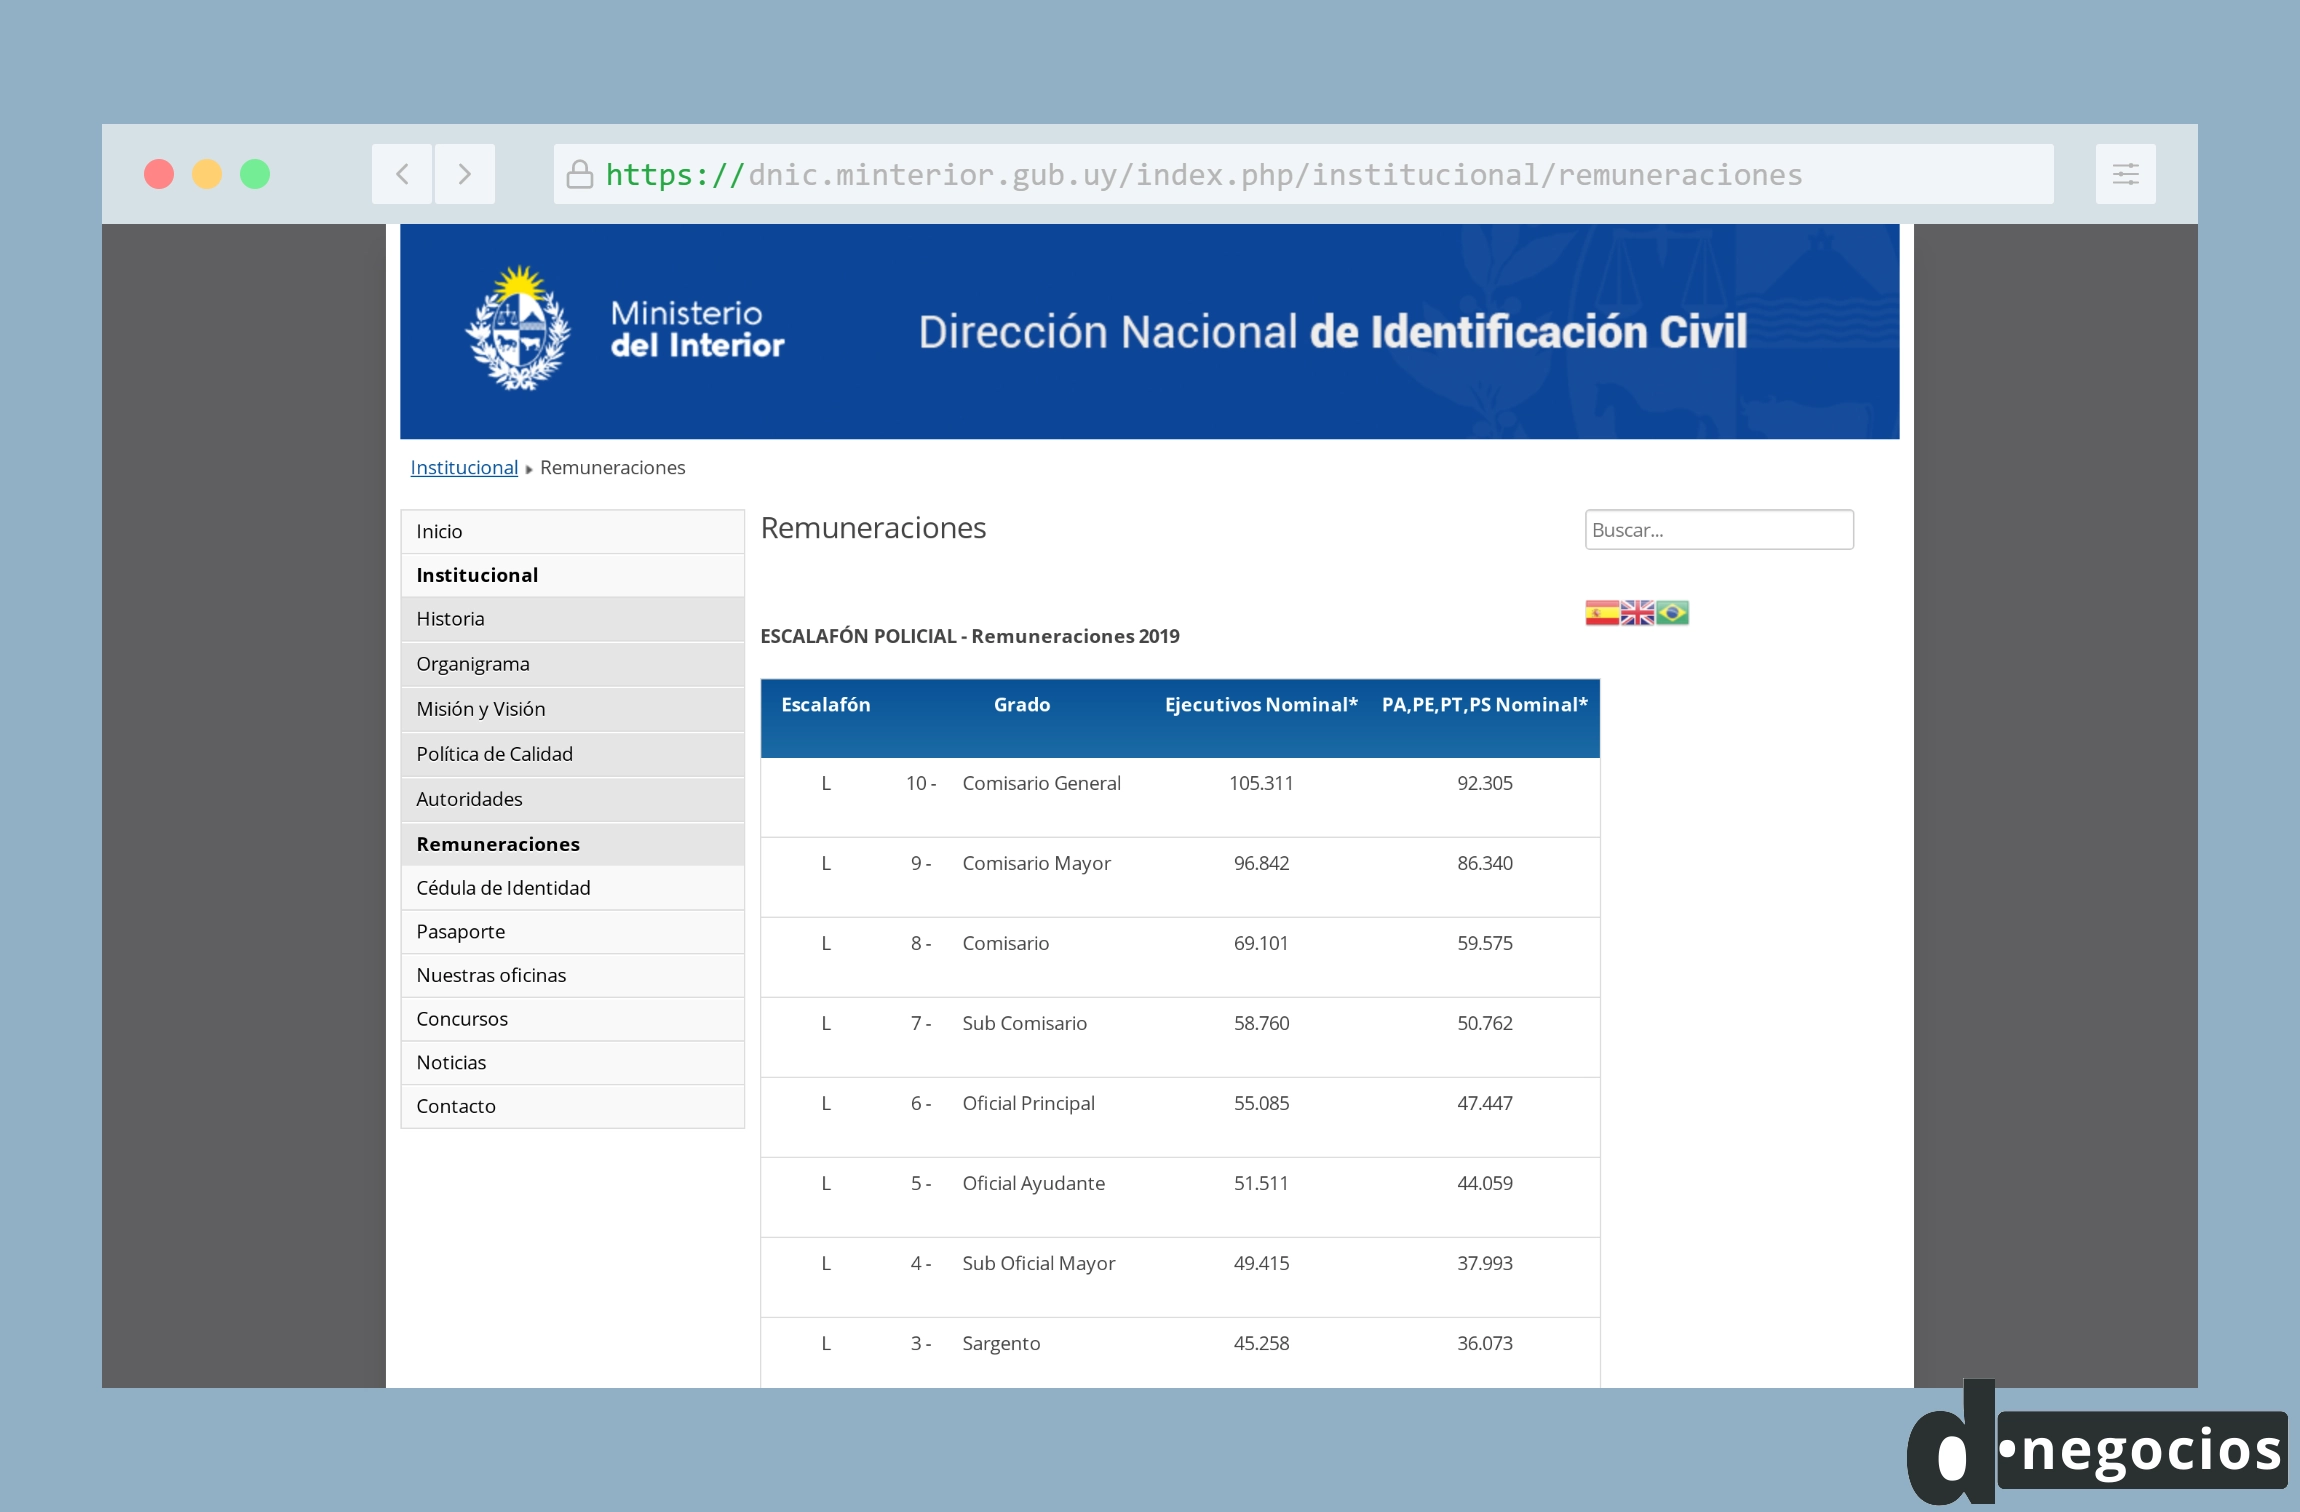 Pagina web oficial con las remuneraciones de los policías en Uruguay.